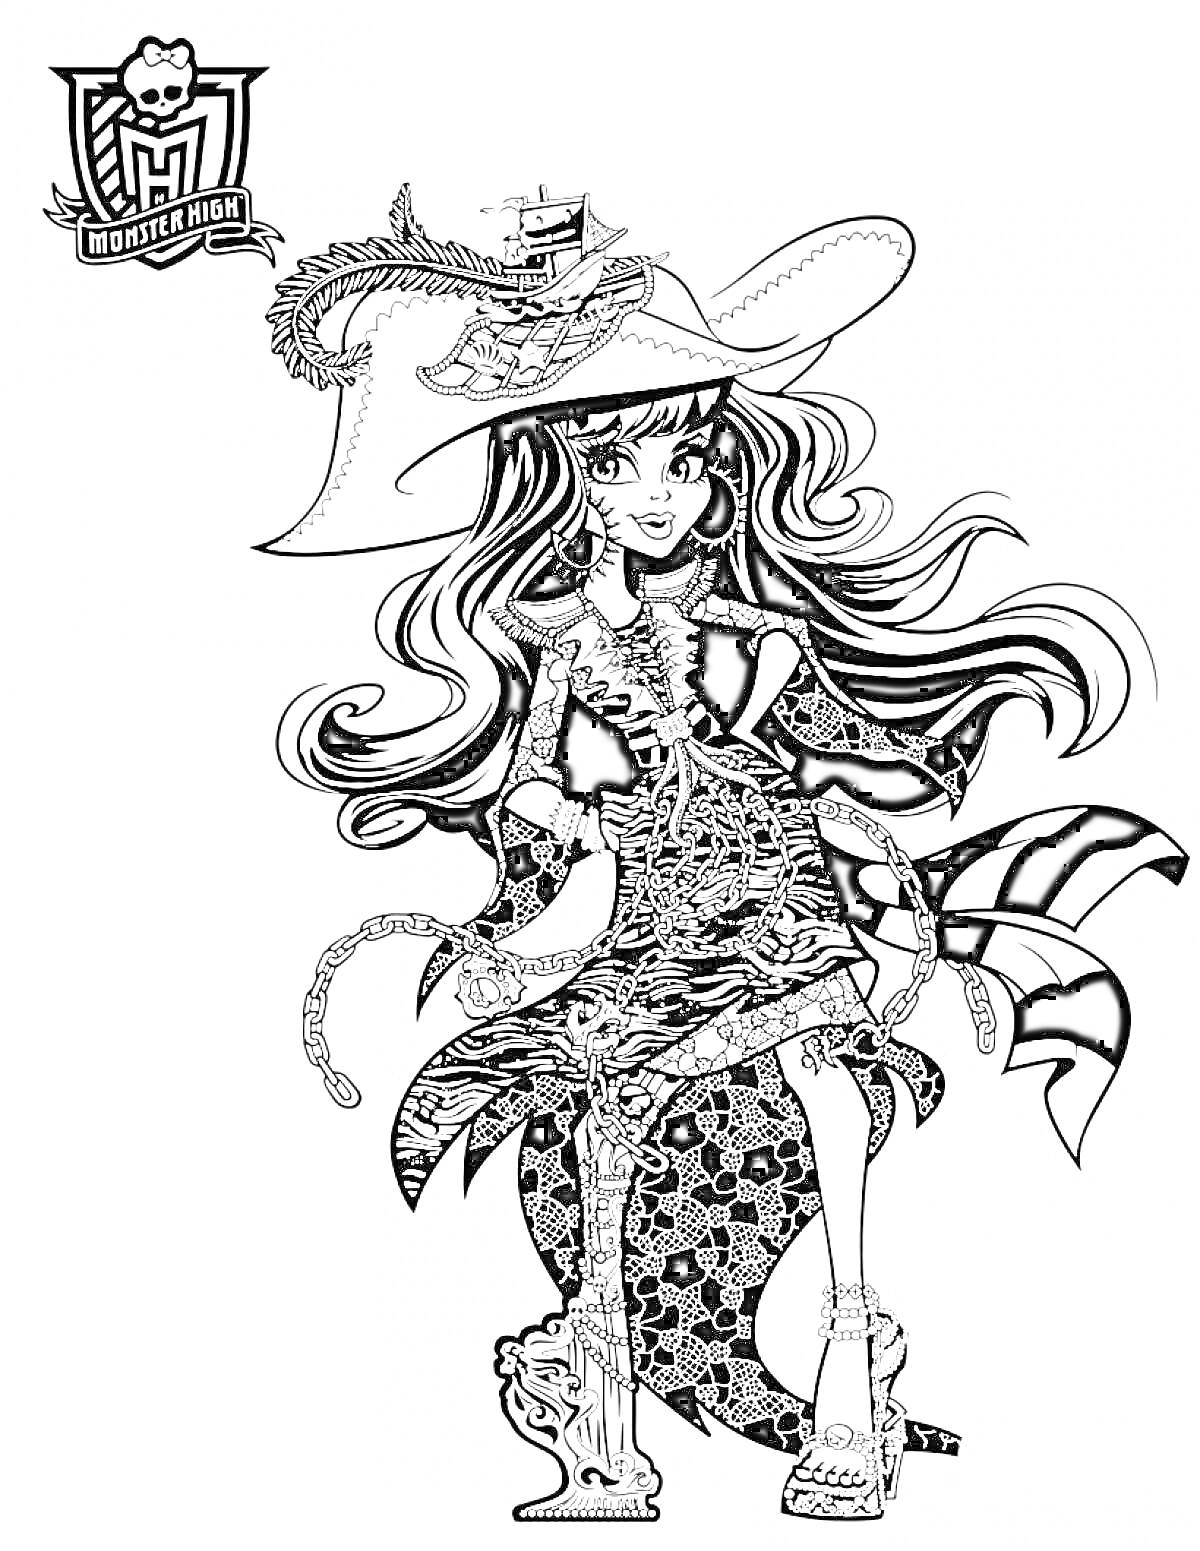 Раскраска Девушка в шляпе с змейкой и длинными волосами в костюме с элементами паутины и черепа, сидящая с веслом